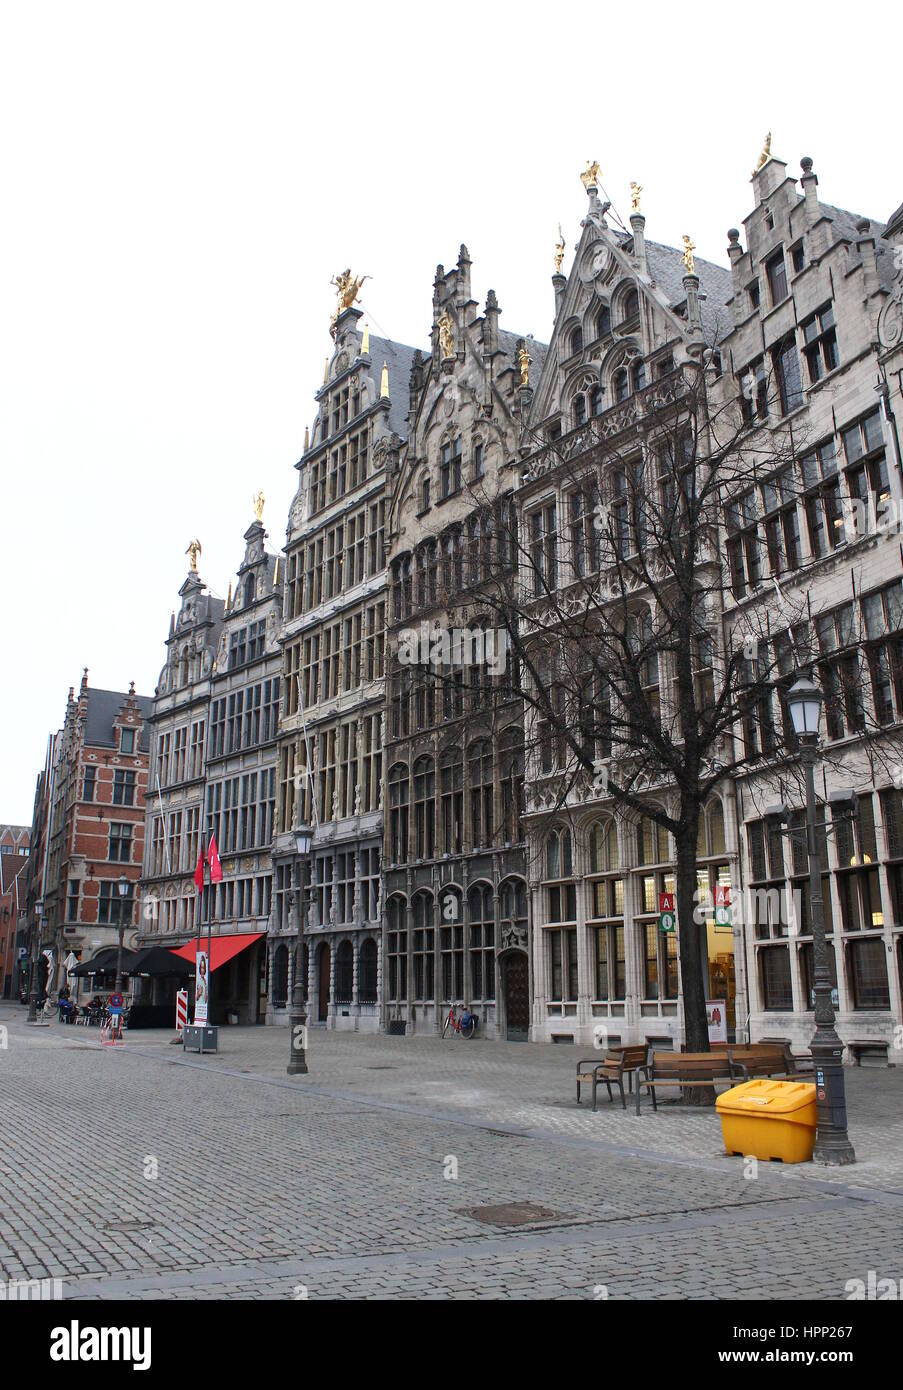 Alten Monental Zunfthäuser am Grote Markt (großer Marktplatz), Antwerpen, Belgien Stockfoto